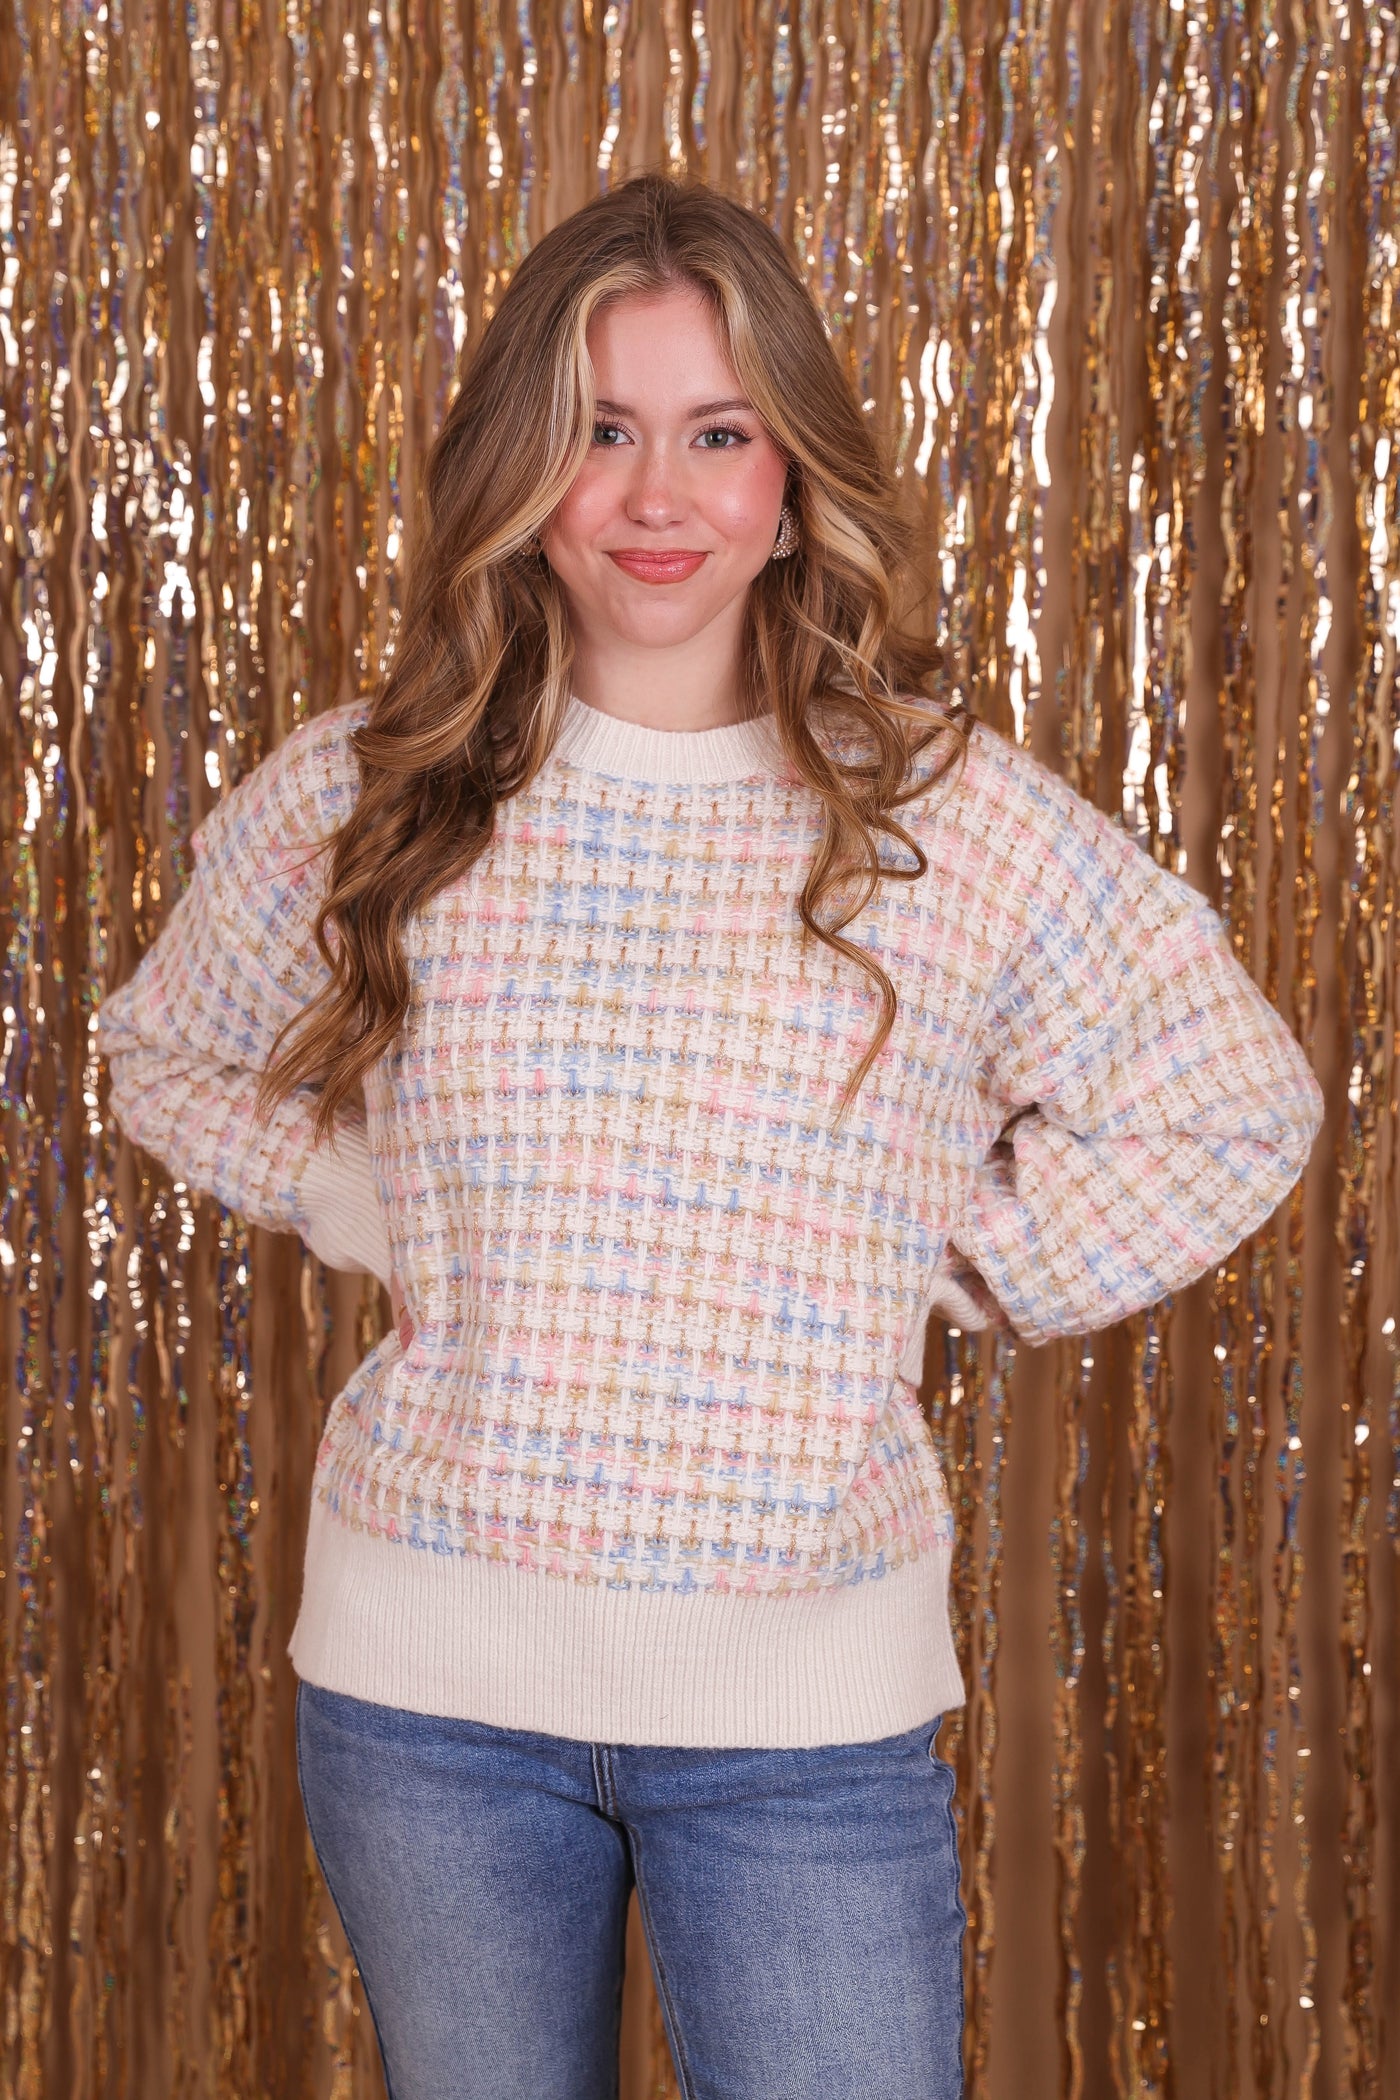 Women's Pastel Tweed Sweater- Women's Chic Tweed Sweater